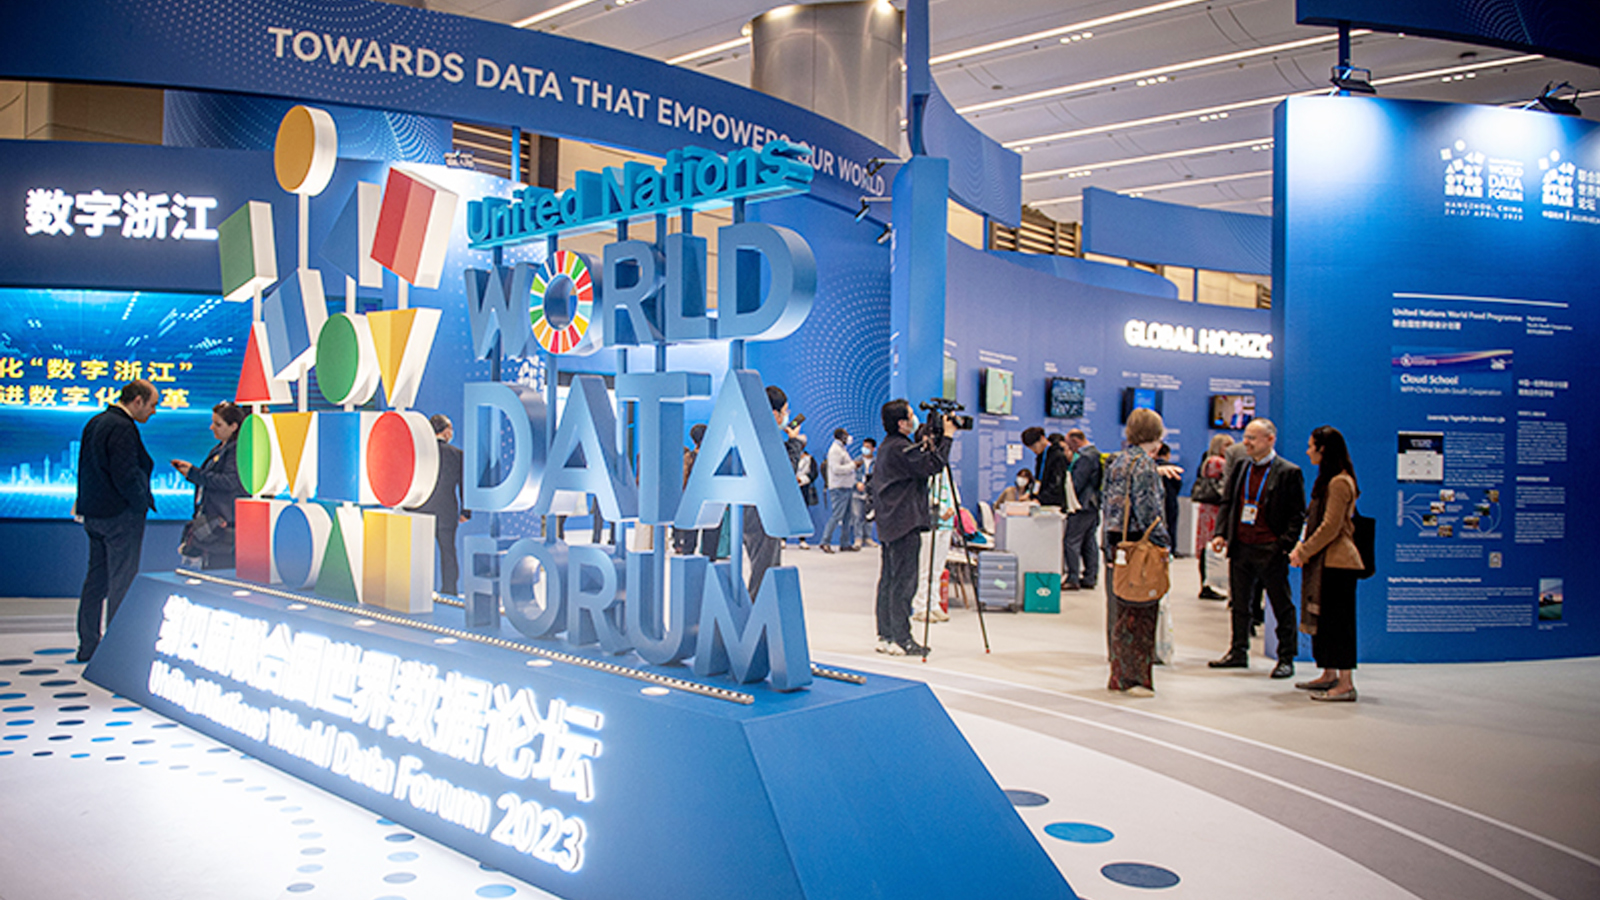 第四届联合国世界数据论坛在杭州成功举办